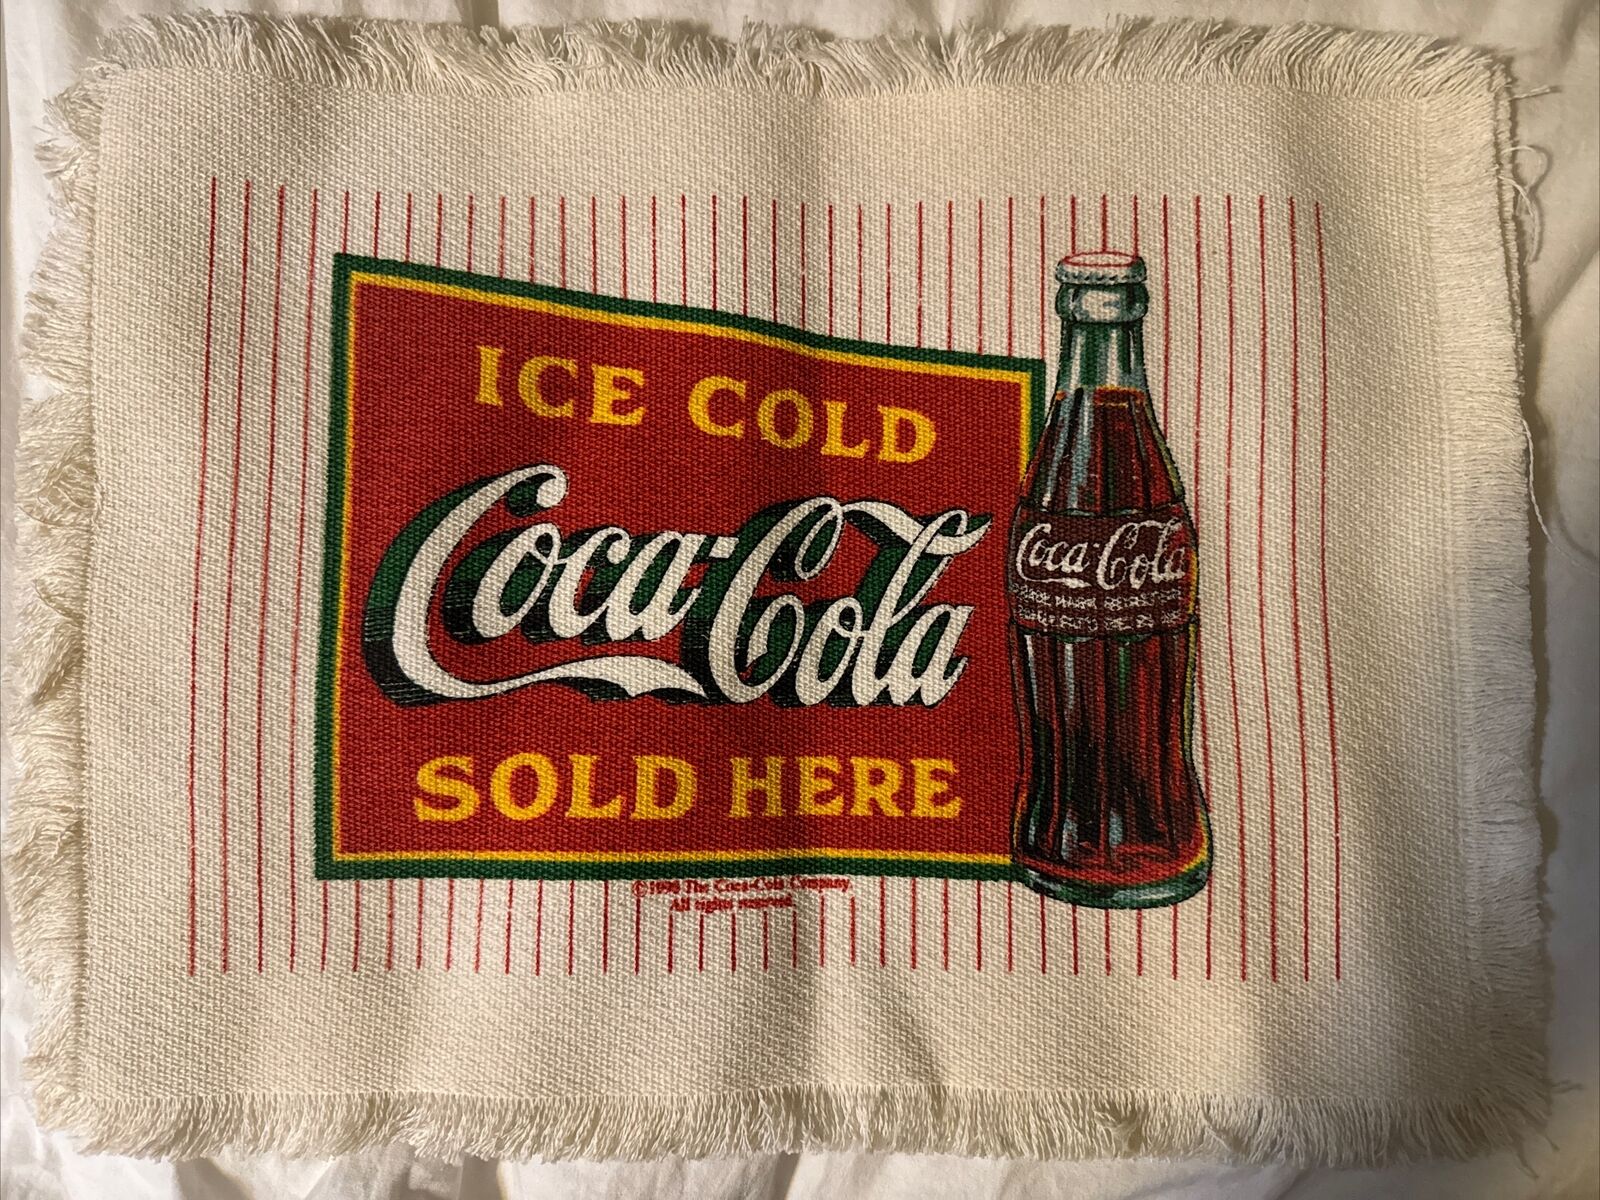 Vintage 1991 Coca-Cola “Ice Cold Coca-Cola Sold Here” Tablecloth